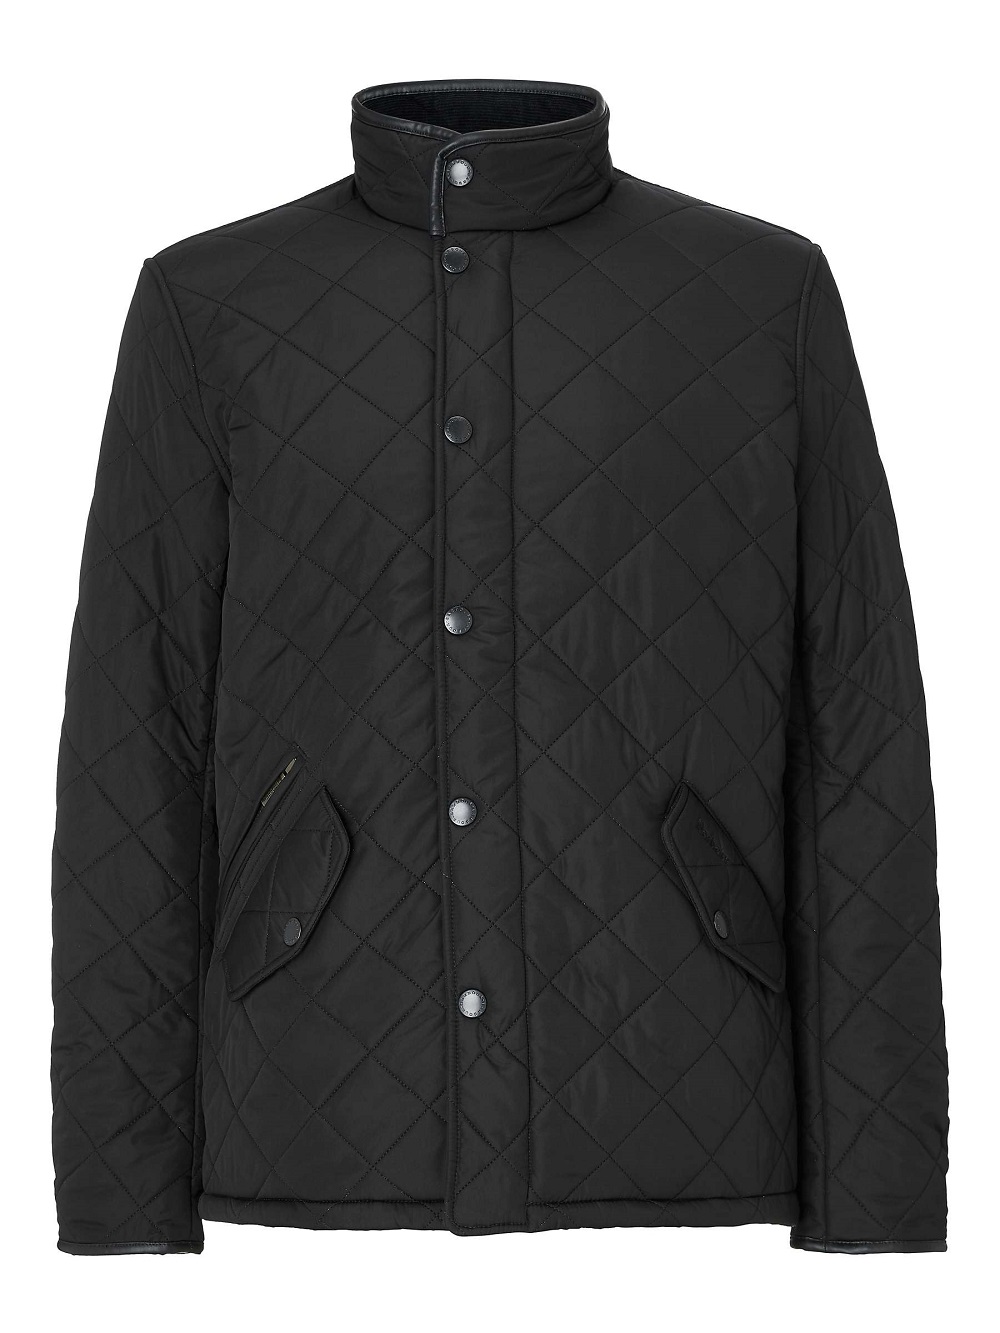 Men's Quilted Jacket Black - AA Sourcing LTD